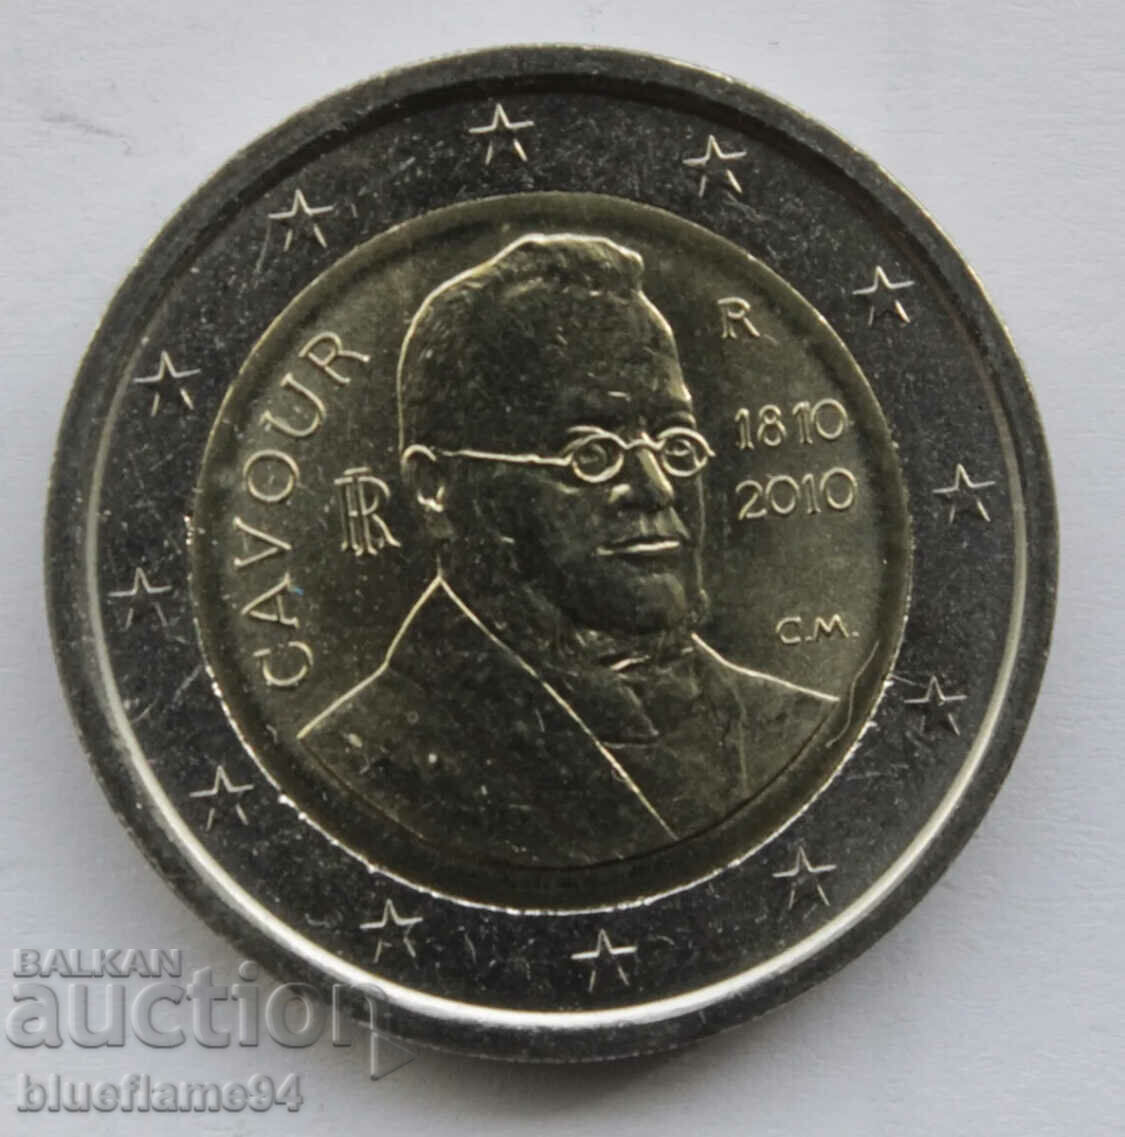 2 euro Italy 2010